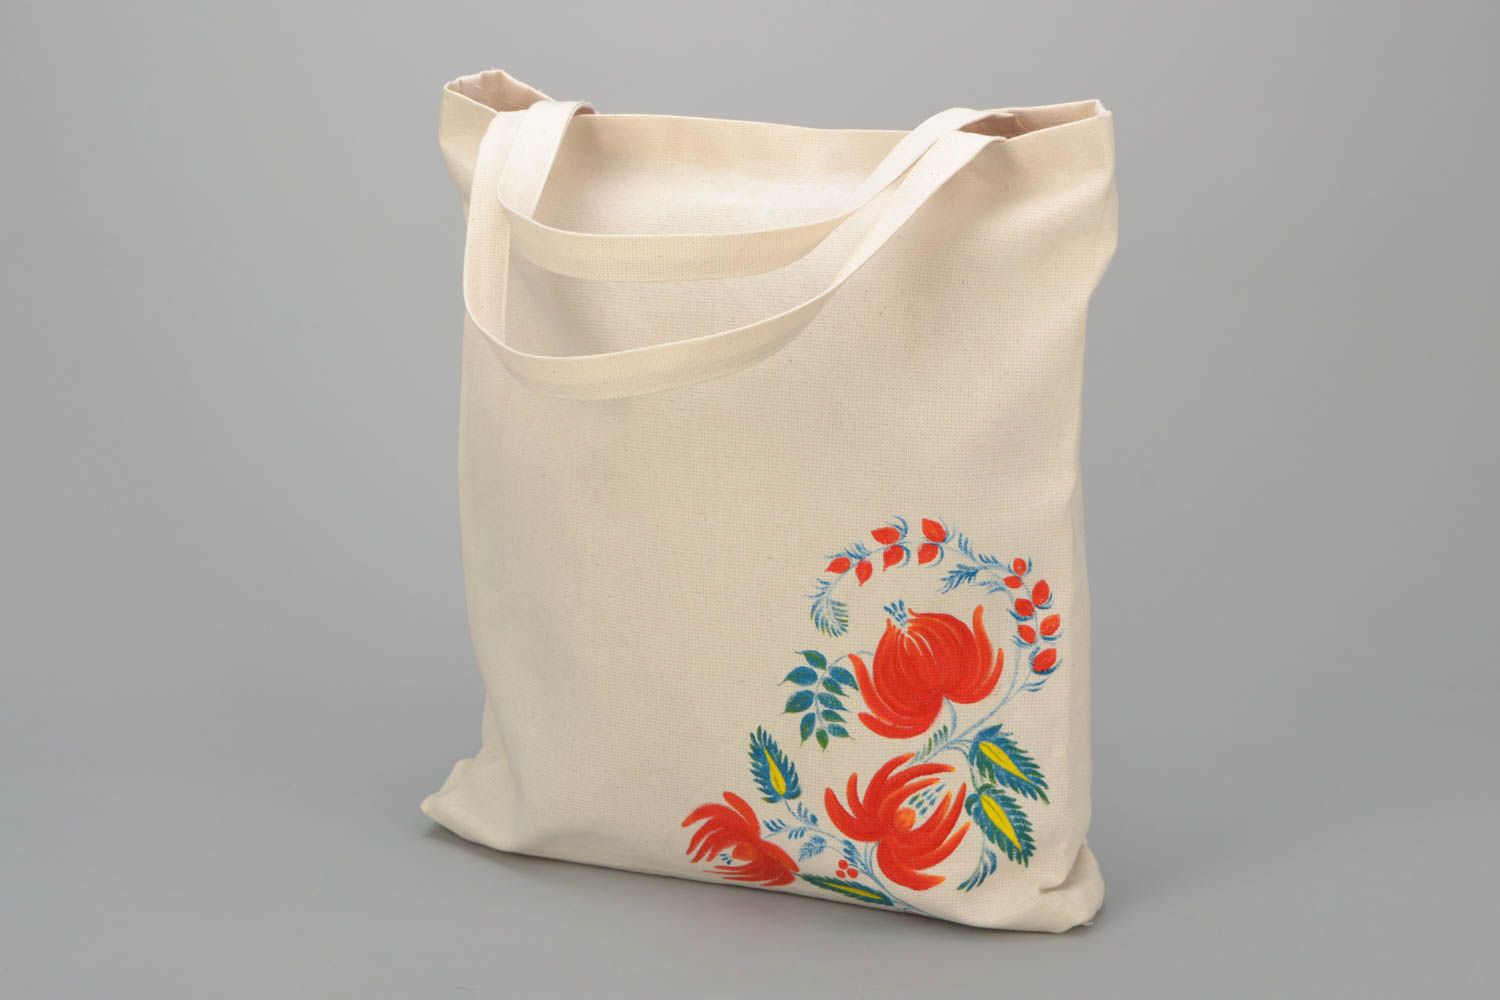 Textil Tasche mit Blumen  foto 1